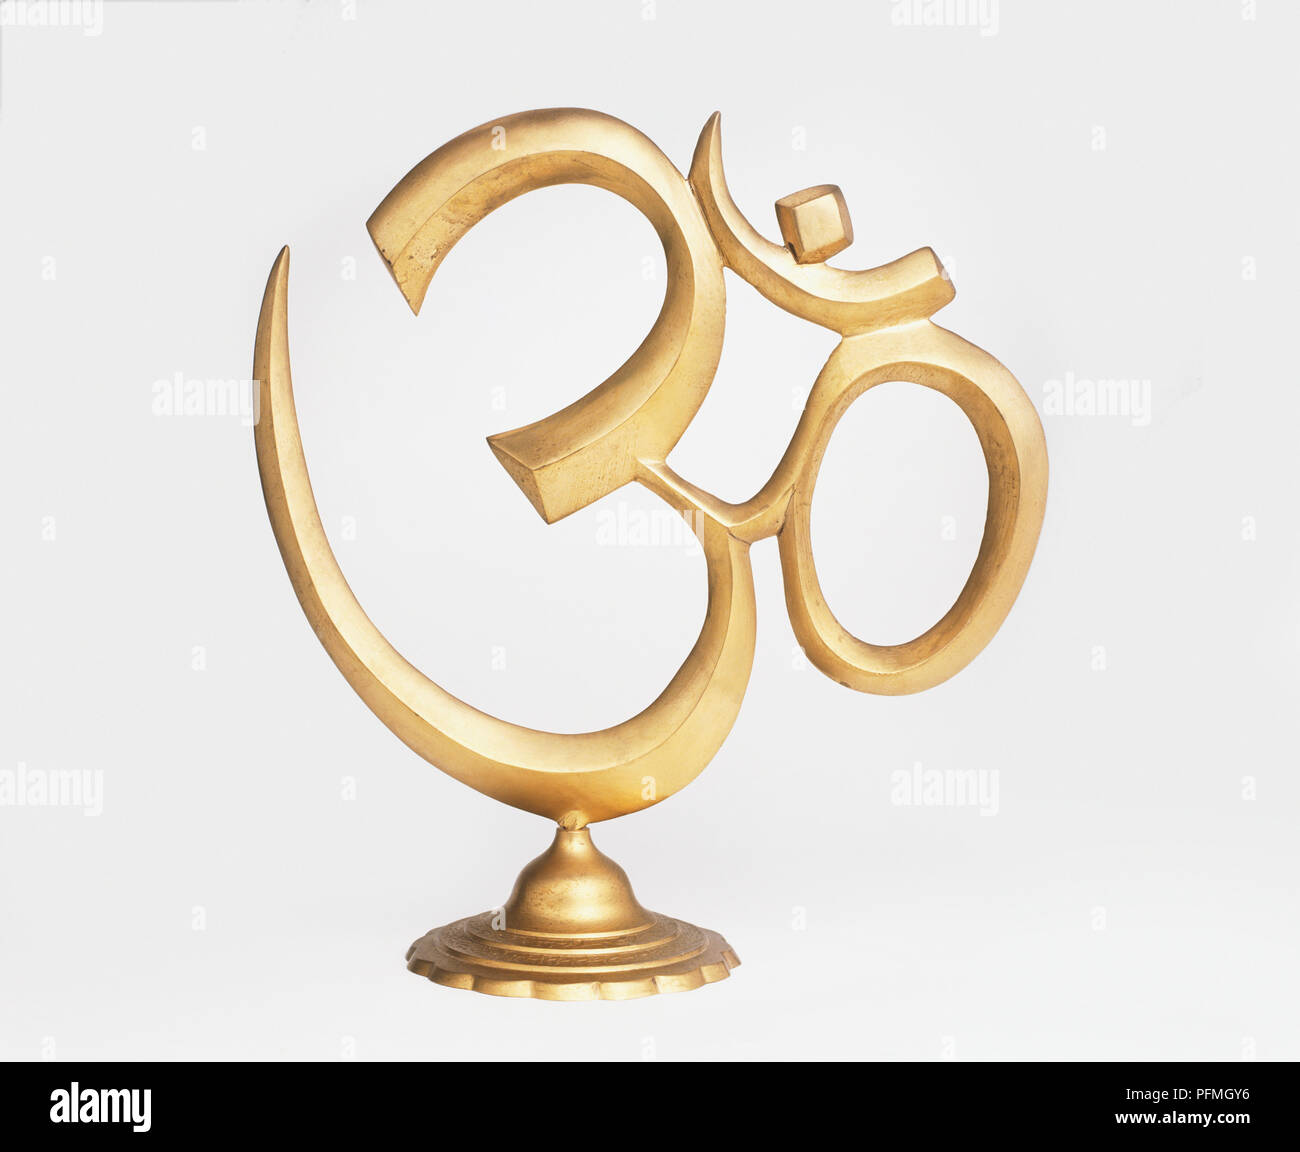 Om, sacred syllable in Hindu faith Stock Photo